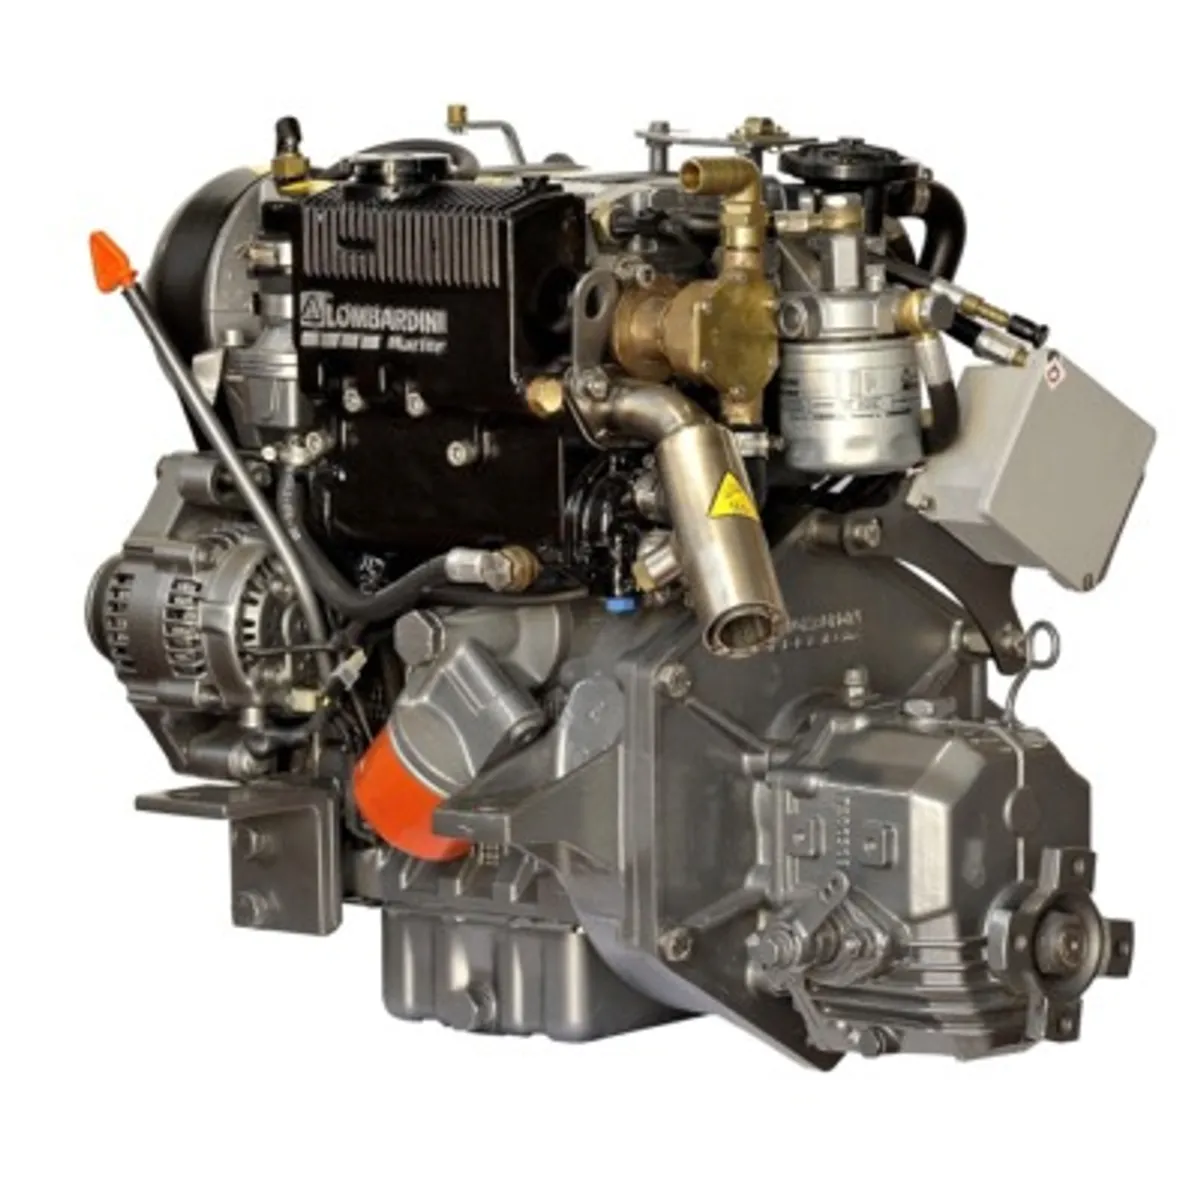 Marine Engines - Lombardini Diesel New & Used (YA) - Image 1